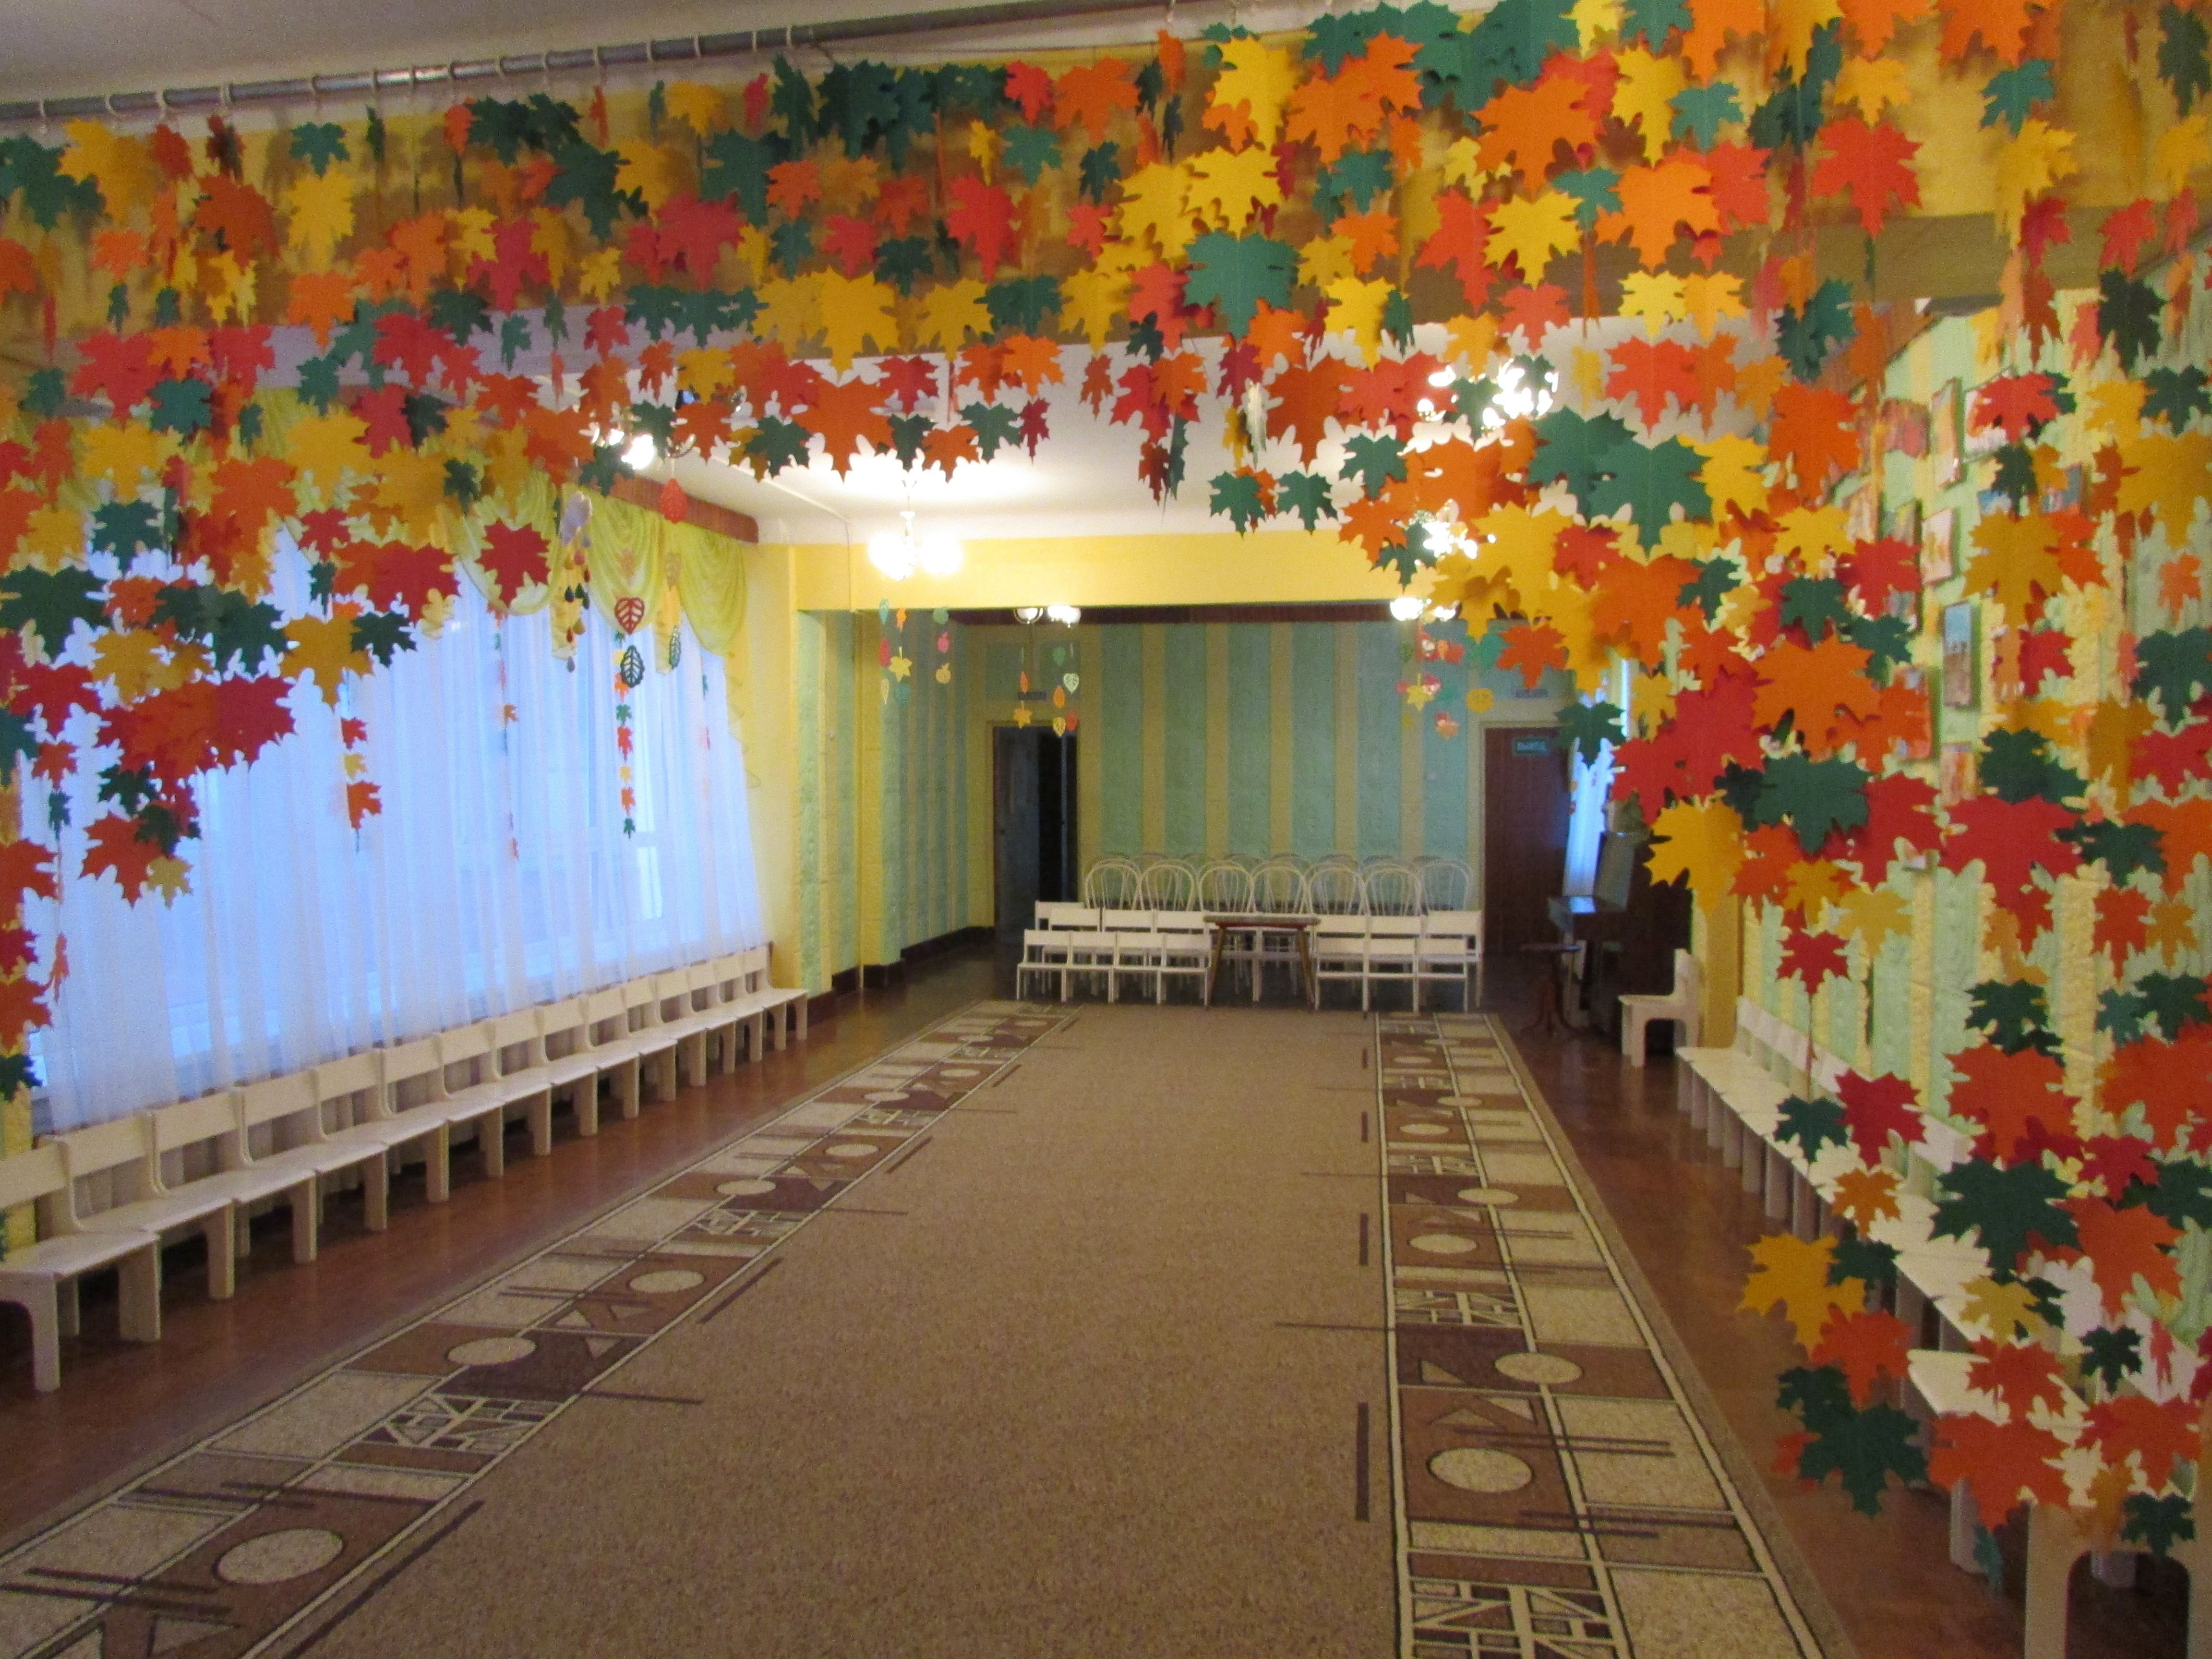 осень оформление стены в музыкальном зале